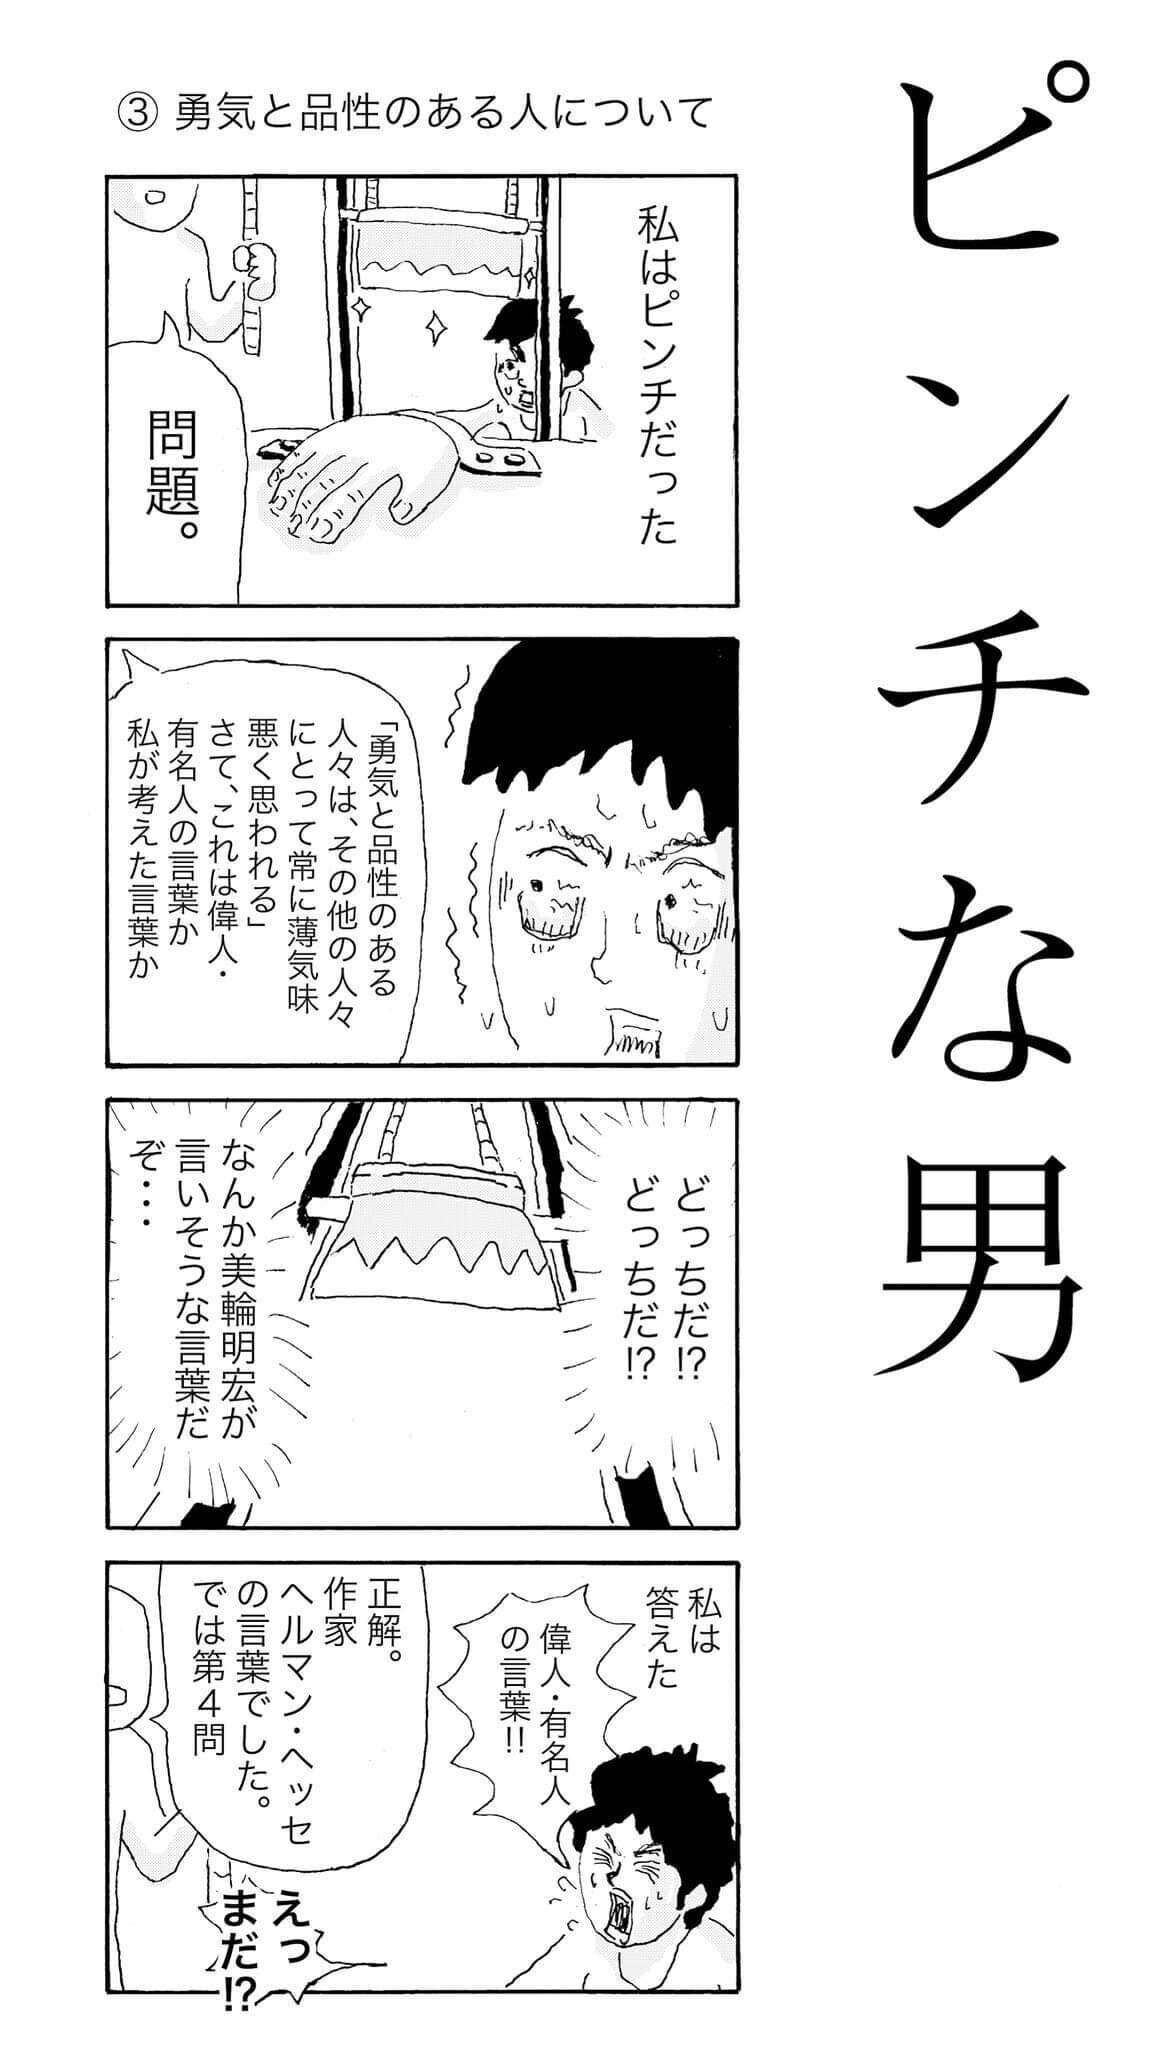 名言クイズ ピンチな男 恋と愛について 中川学 漫画家 Note